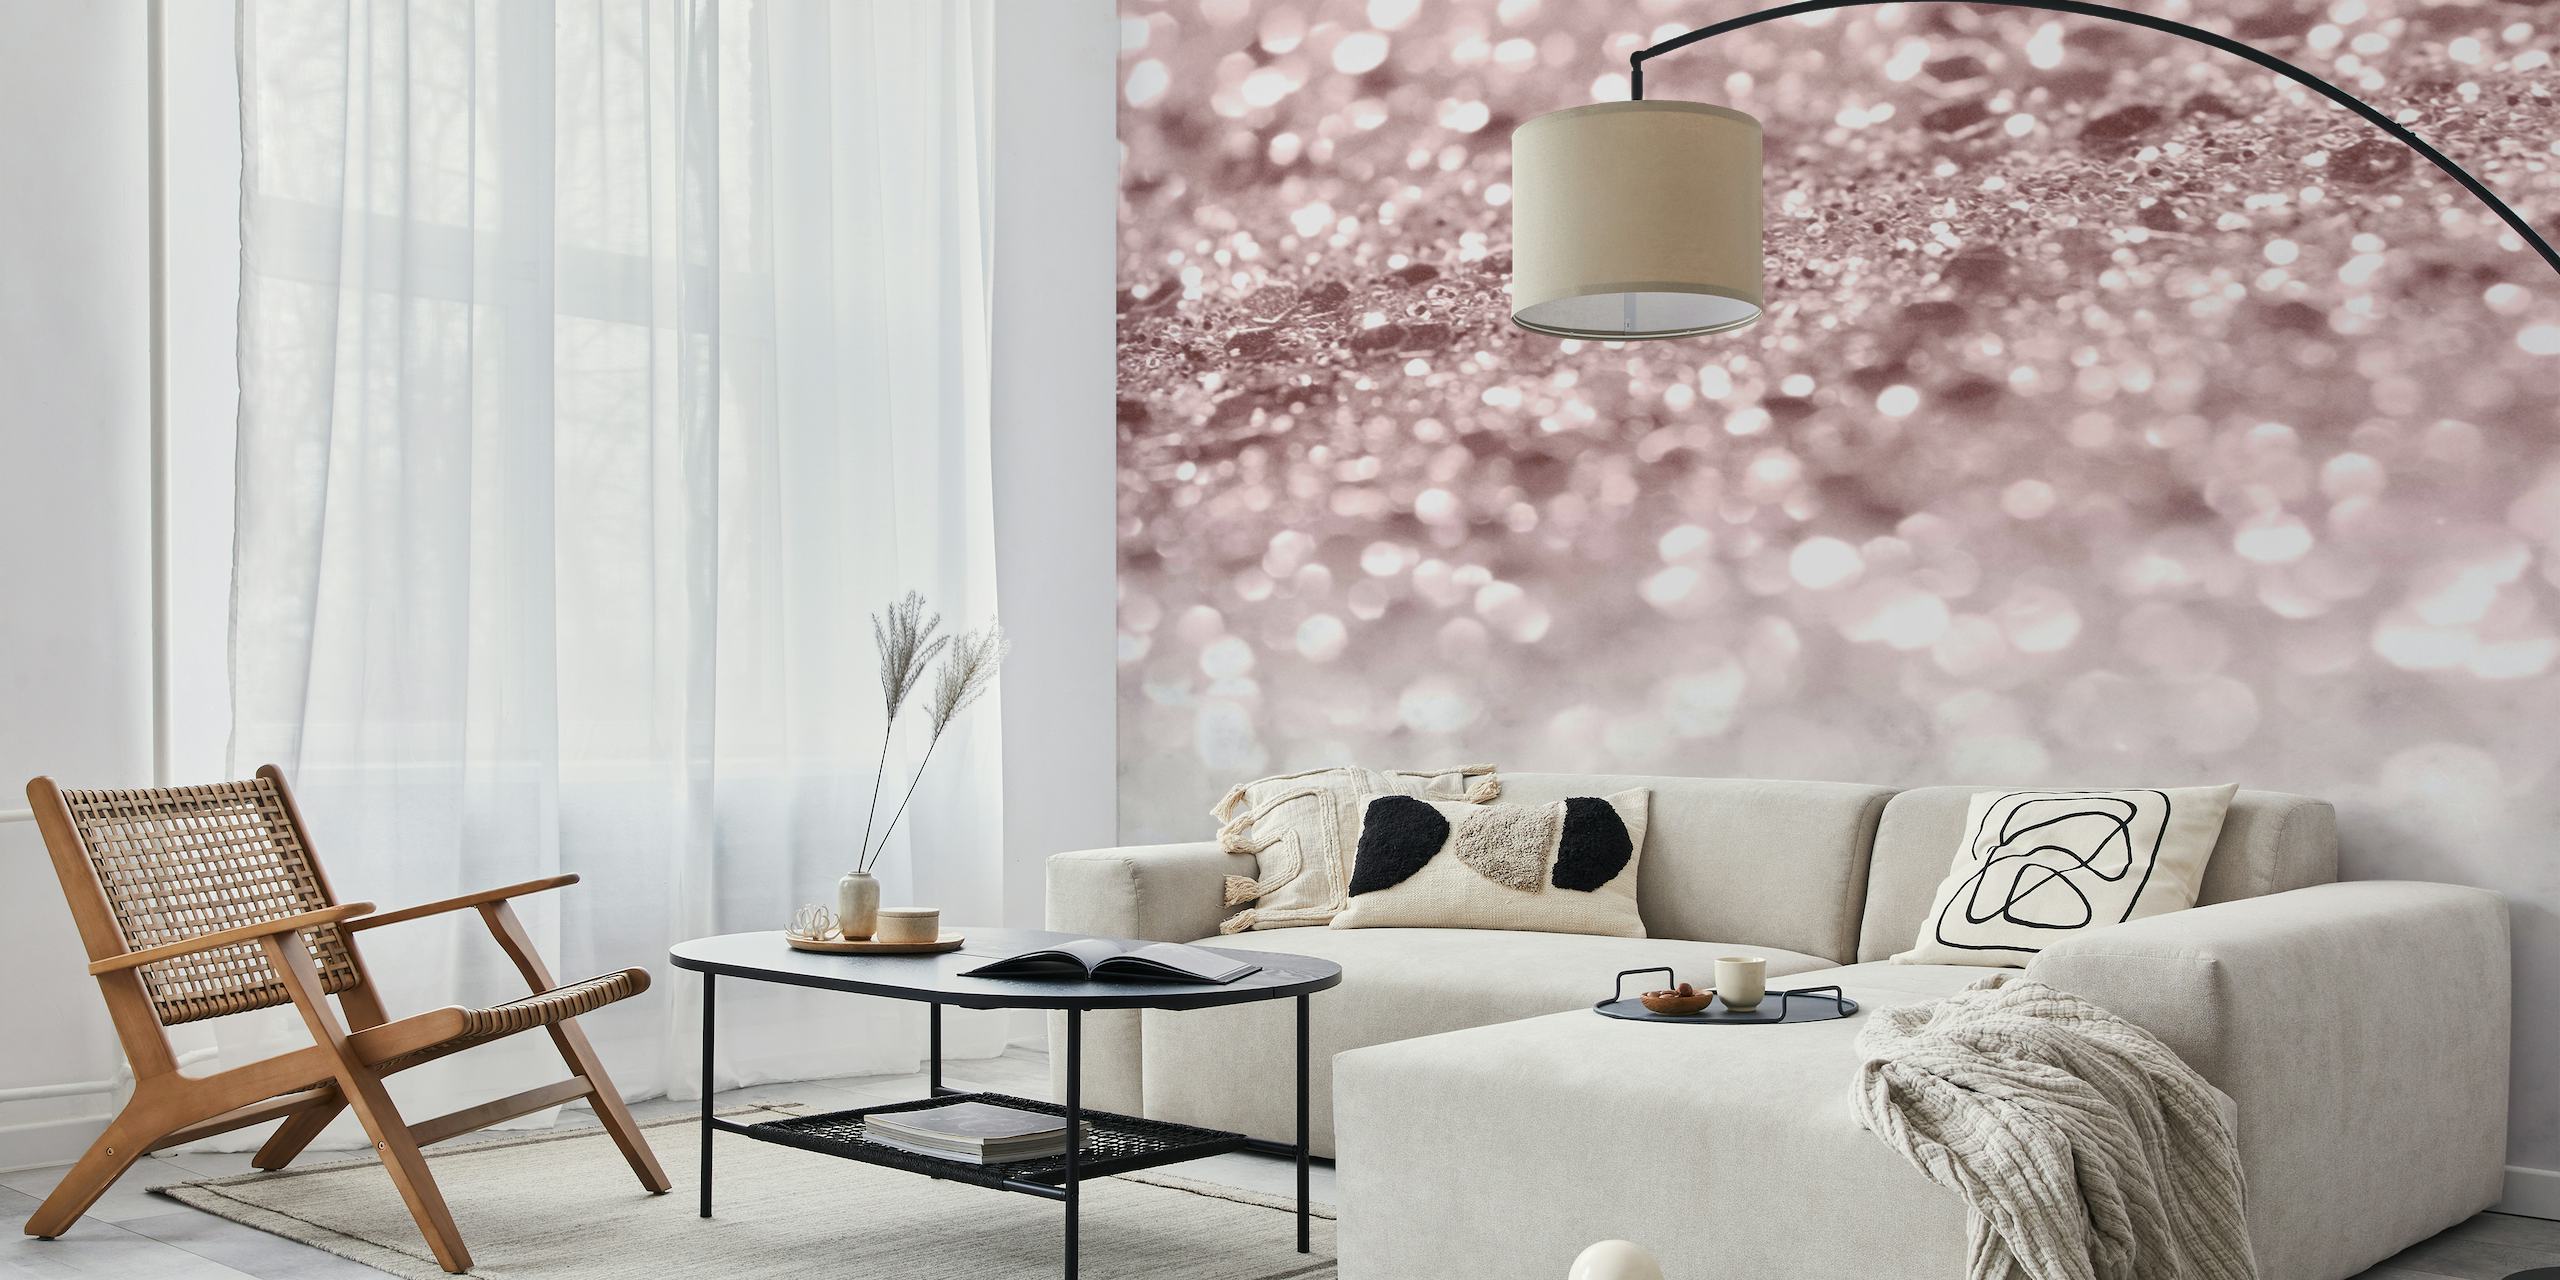 Fotomural vinílico de parede elegante com glitter rosa e textura de mármore